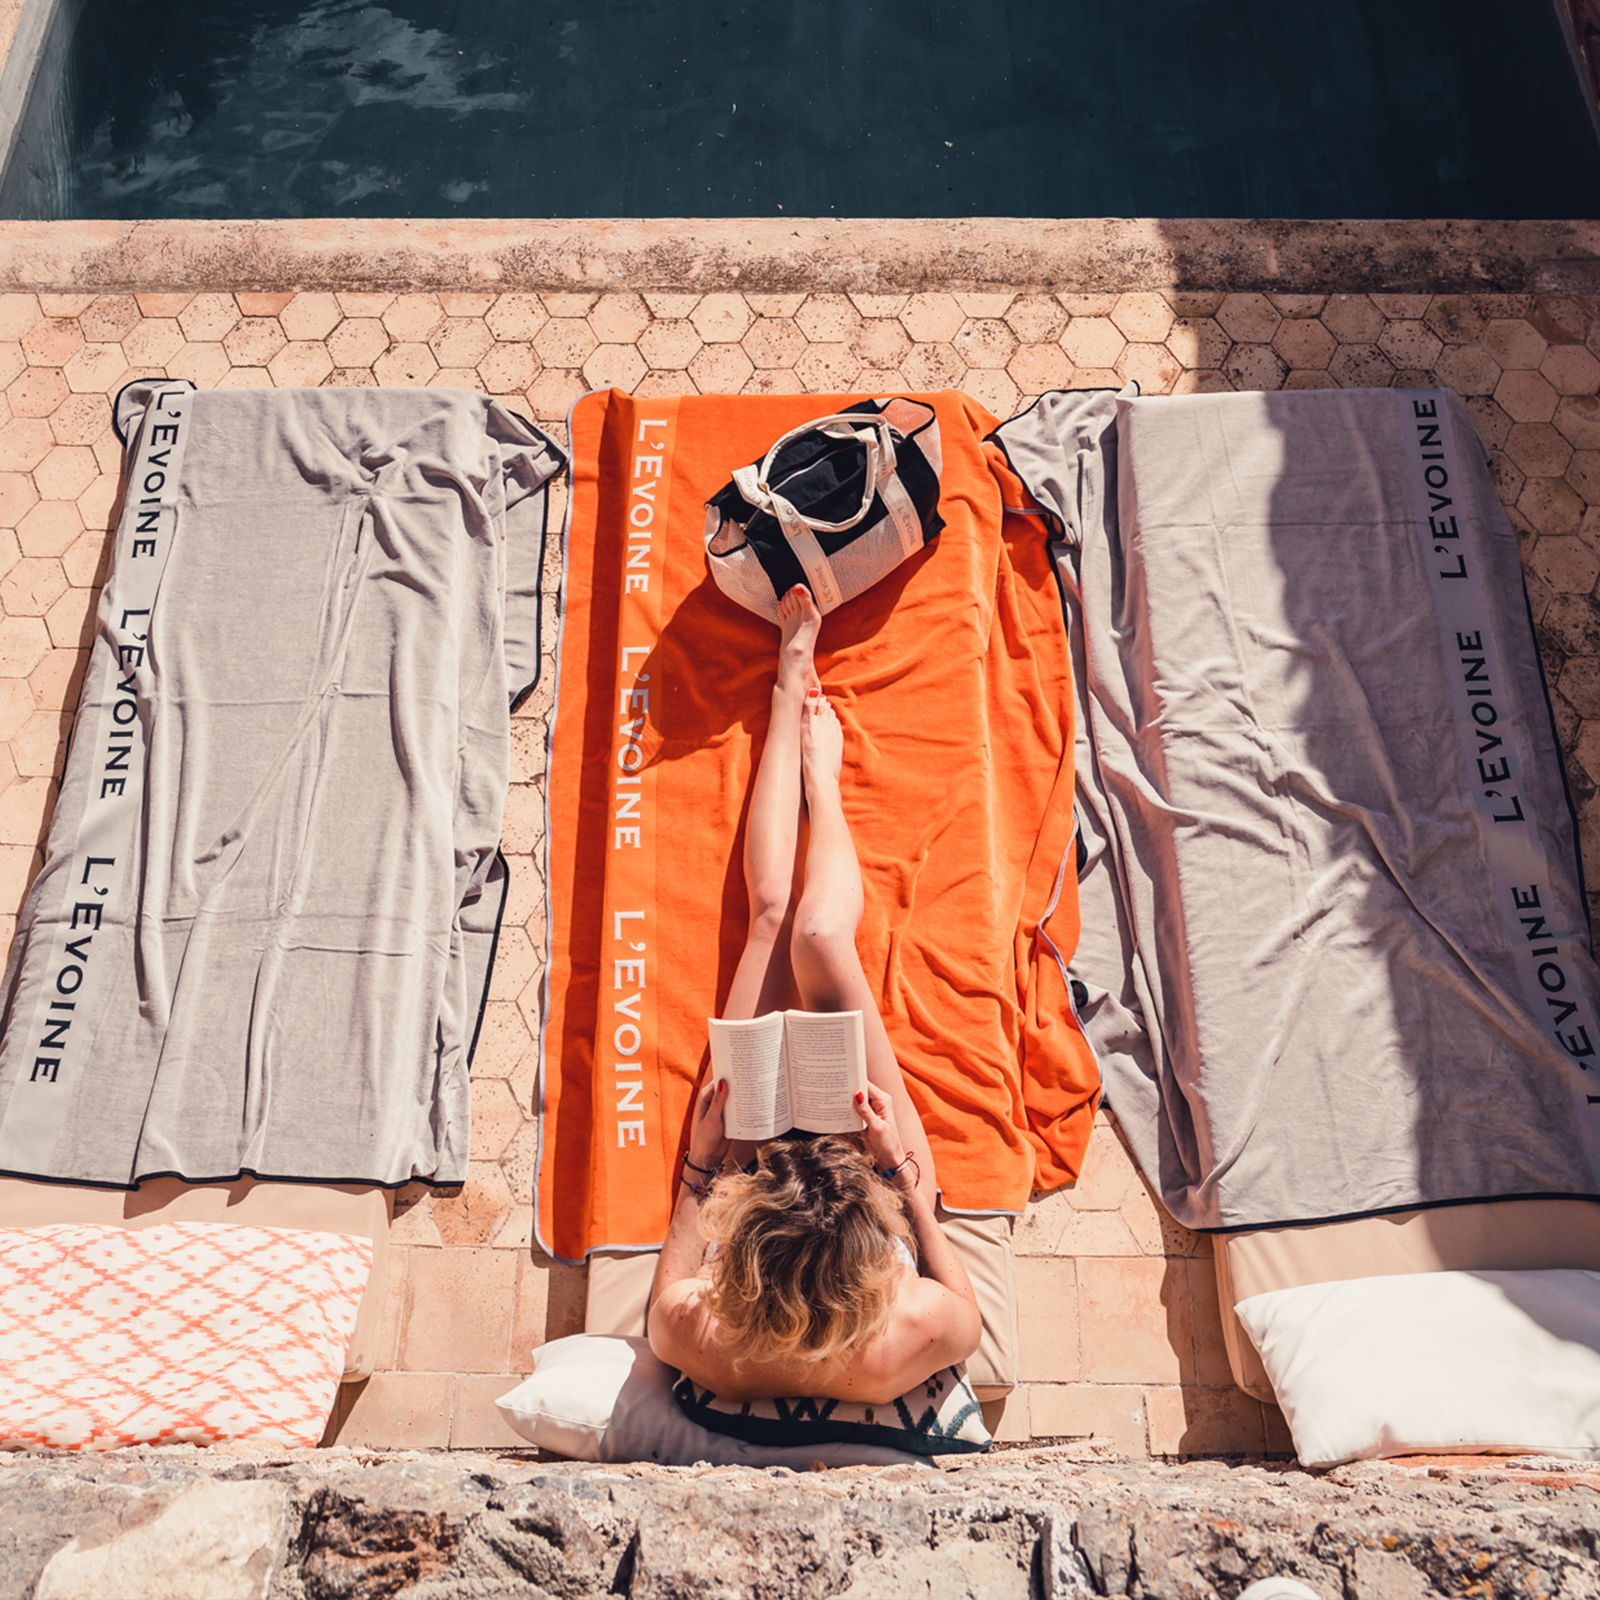 L'Evoine Terry Blanket am Pool auf Mallorca in der Farbe orange und grau